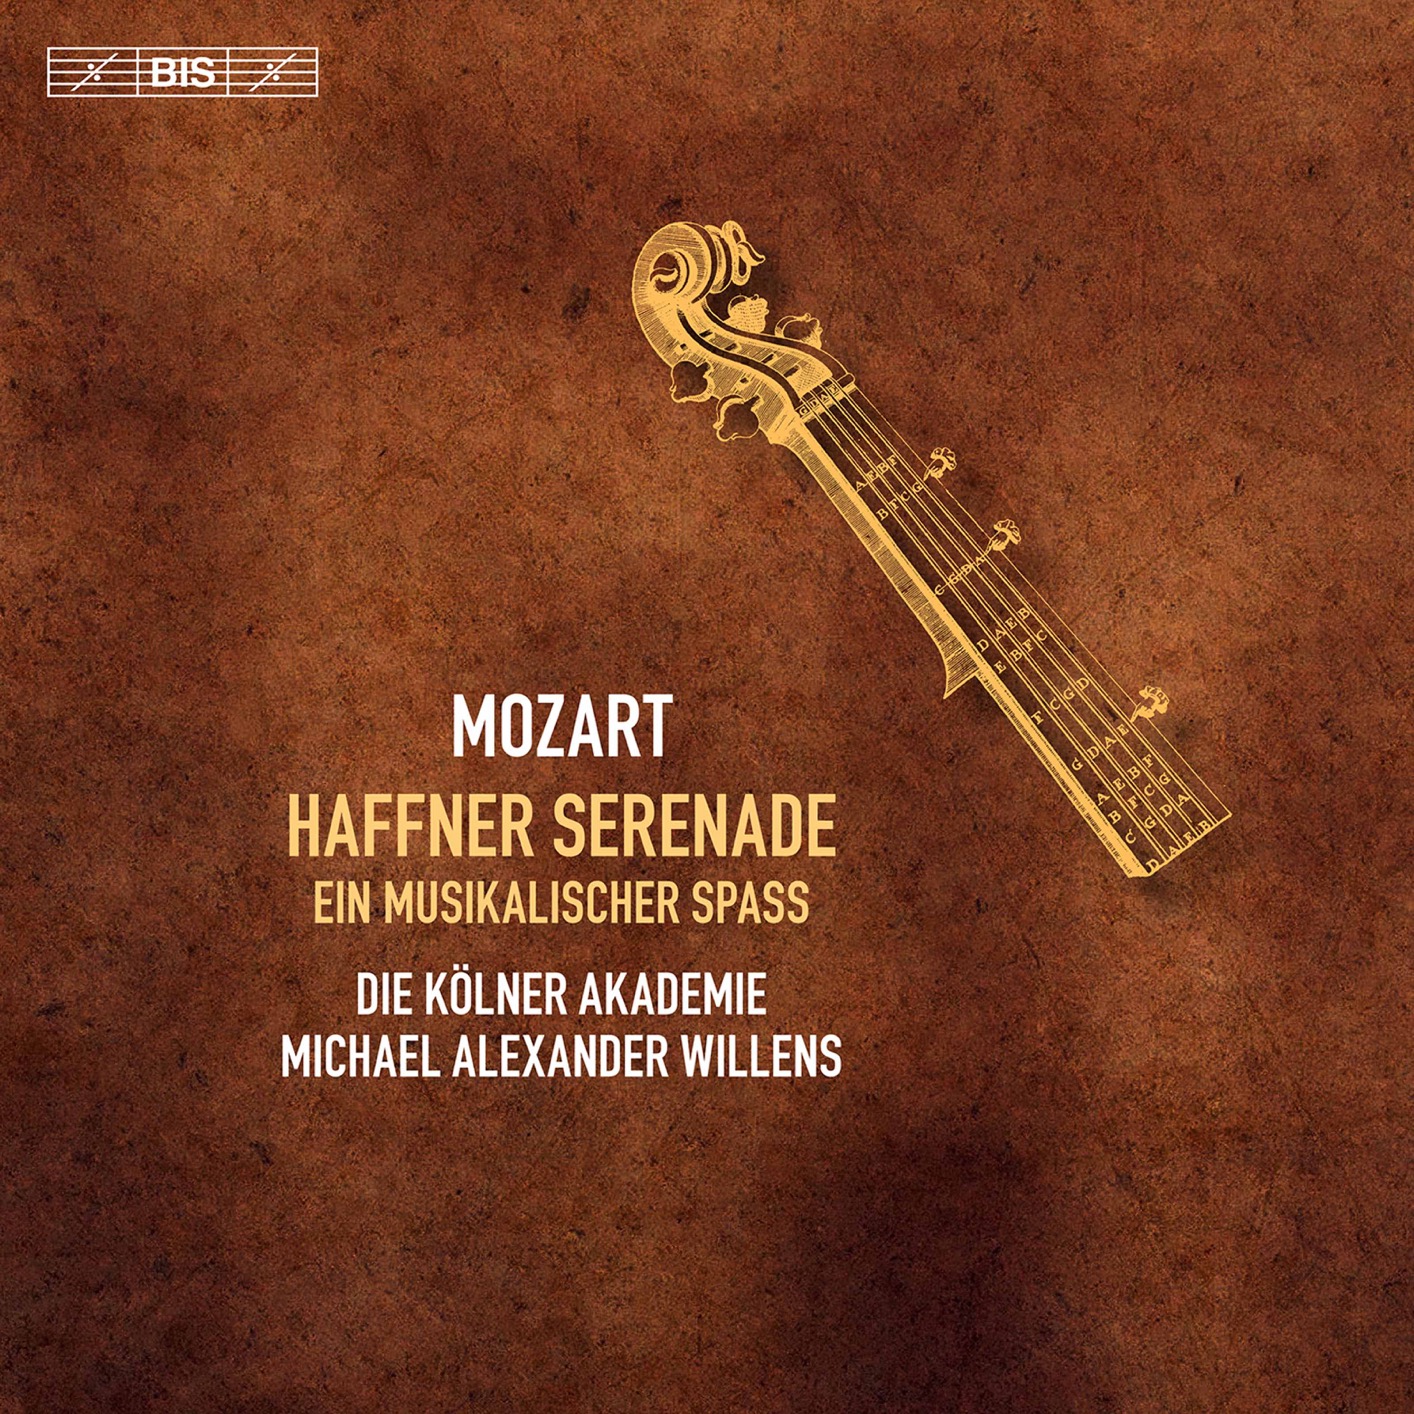 Die Kolner Akademie & Michael Alexander Willens - Mozart: Haffner Serenade & Ein musikalischer Spaß (2020) [FLAC 24bit/96kHz]